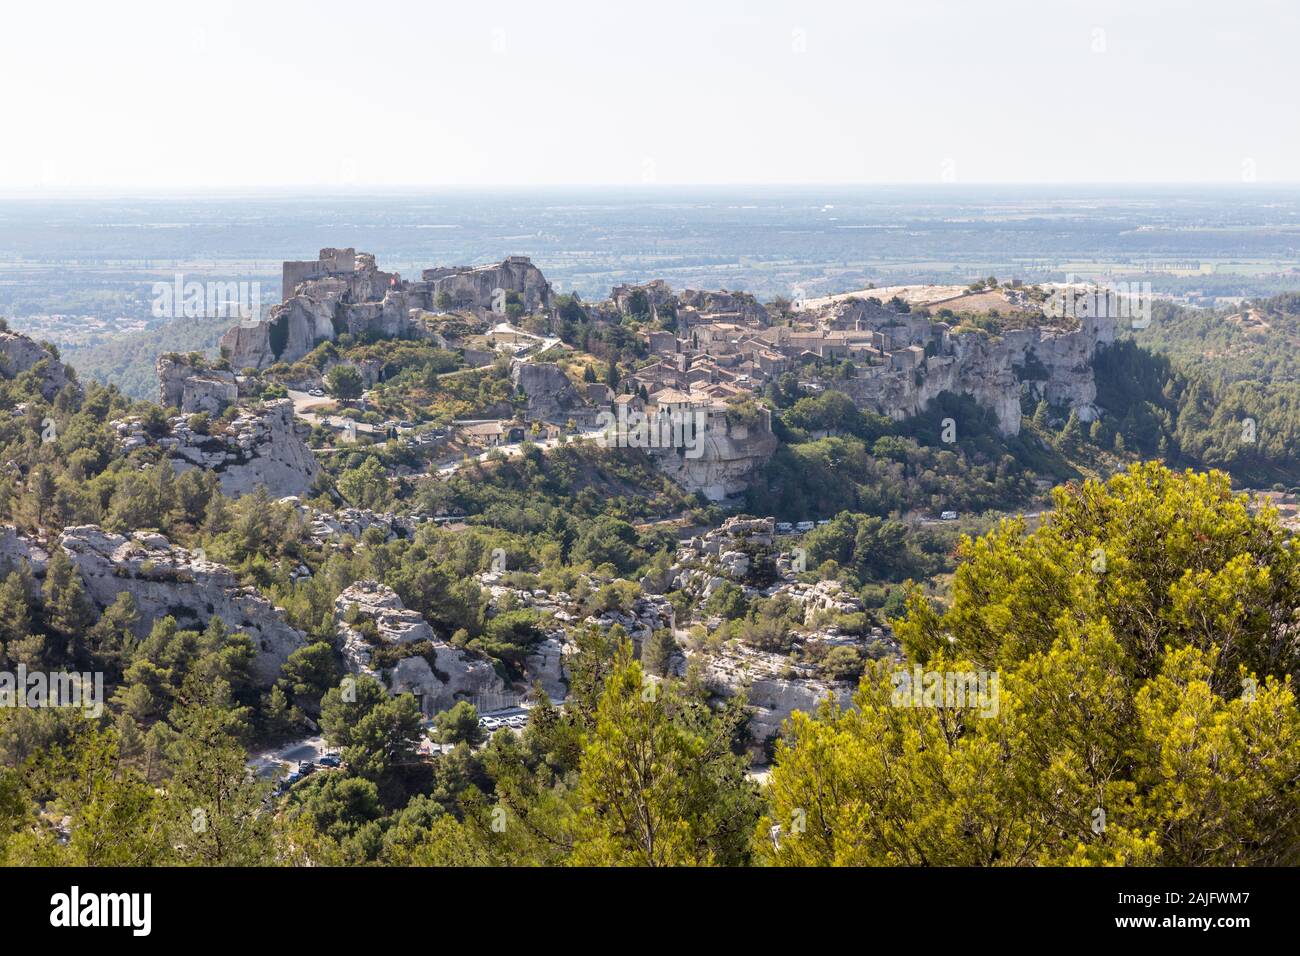 Vista de la famosa ciudad medieval y su castillo Les Baux-de-Provence, Provenza, Francia Foto de stock